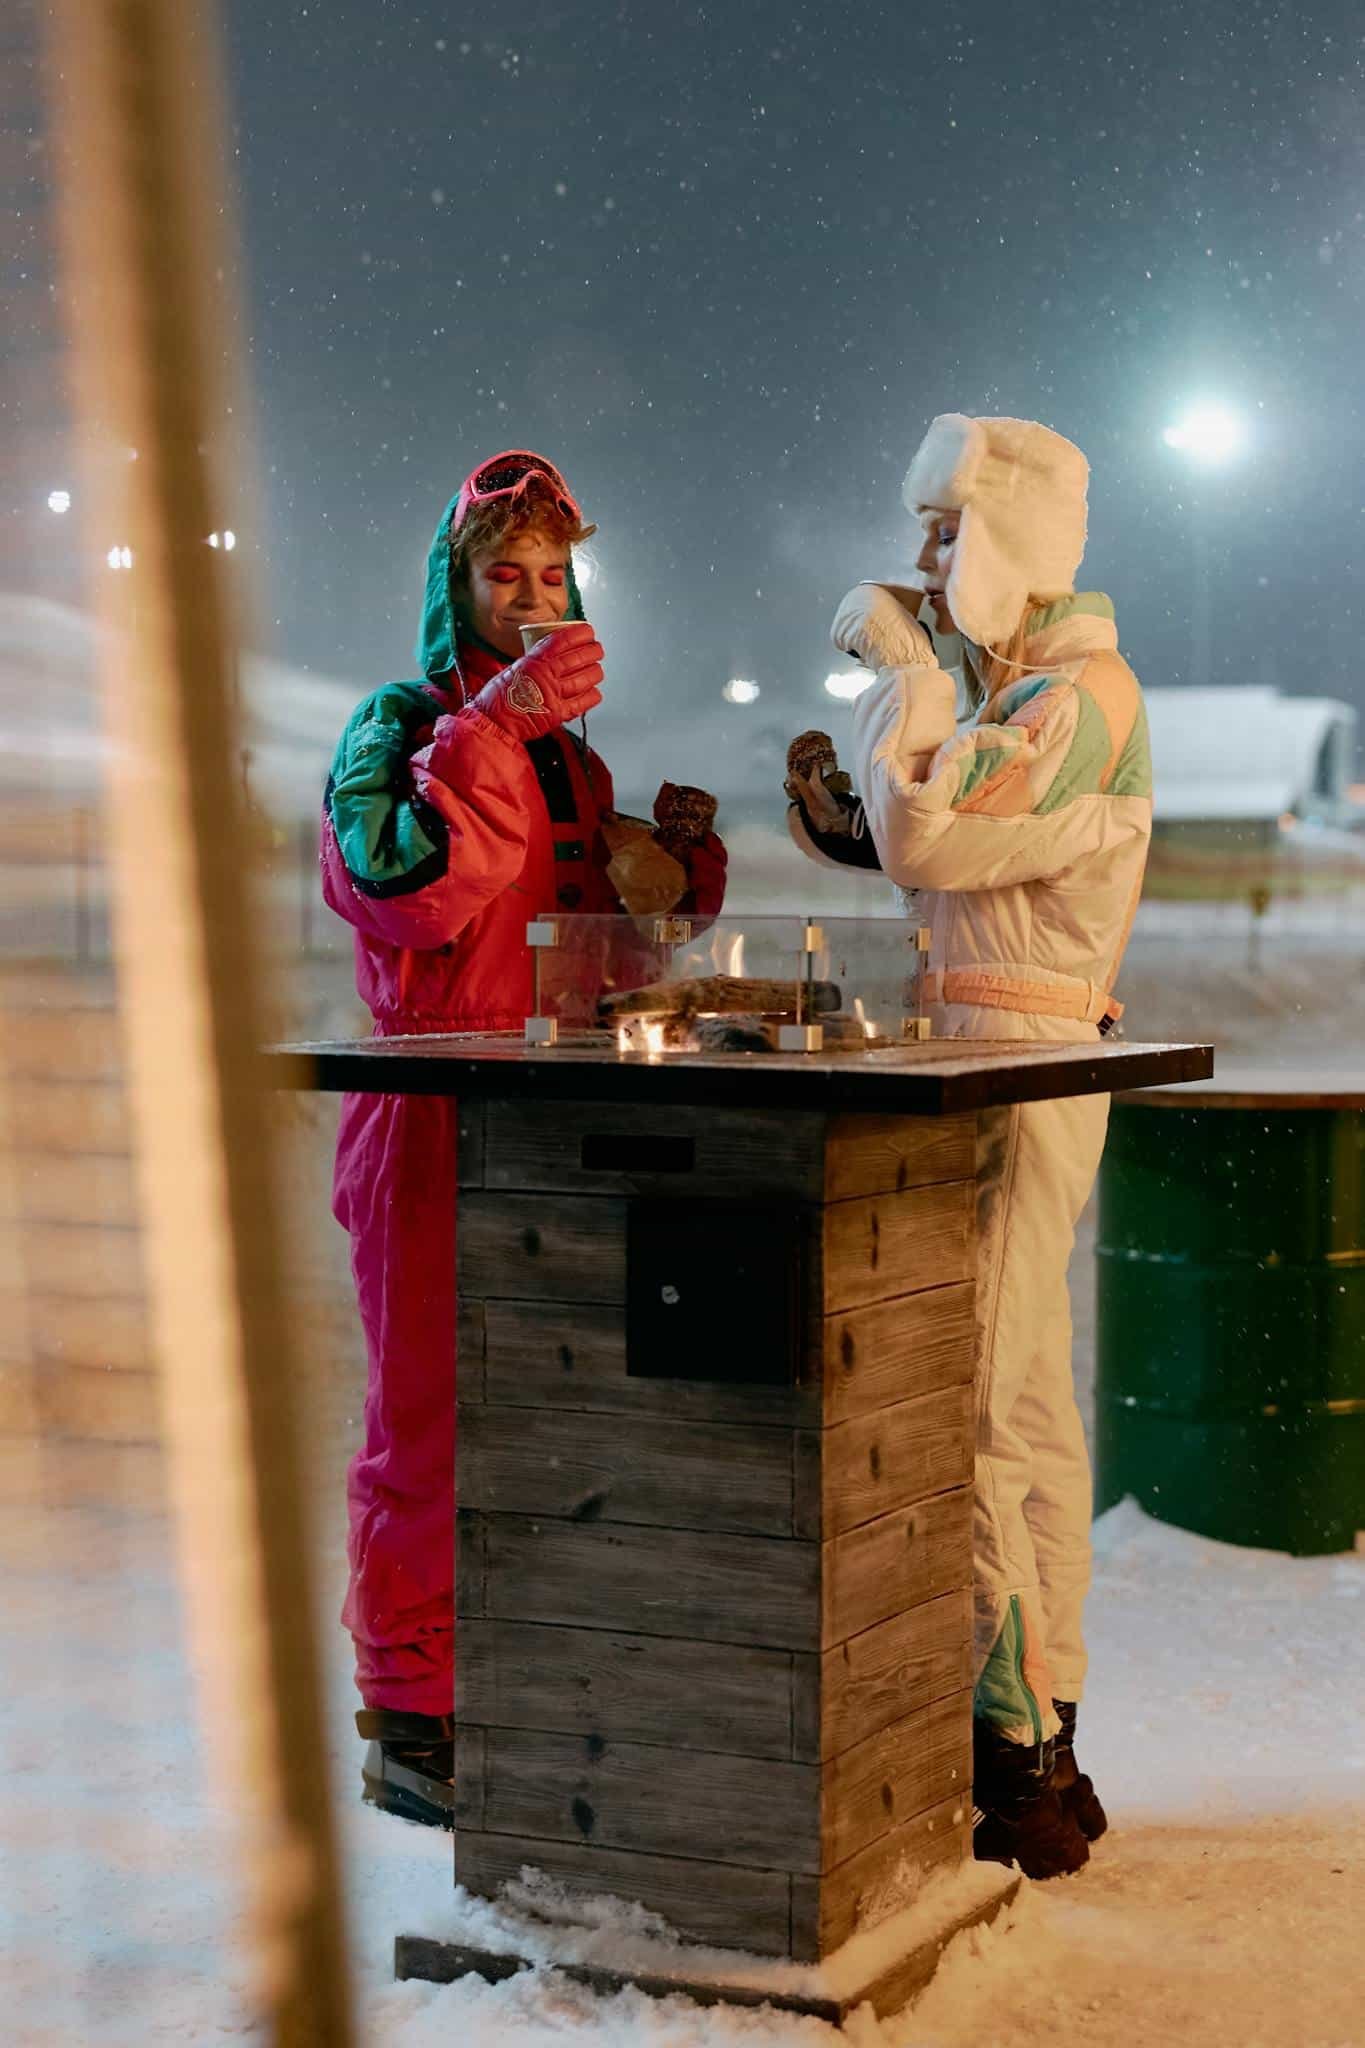 Women in Ski Suit Drinking Coffee